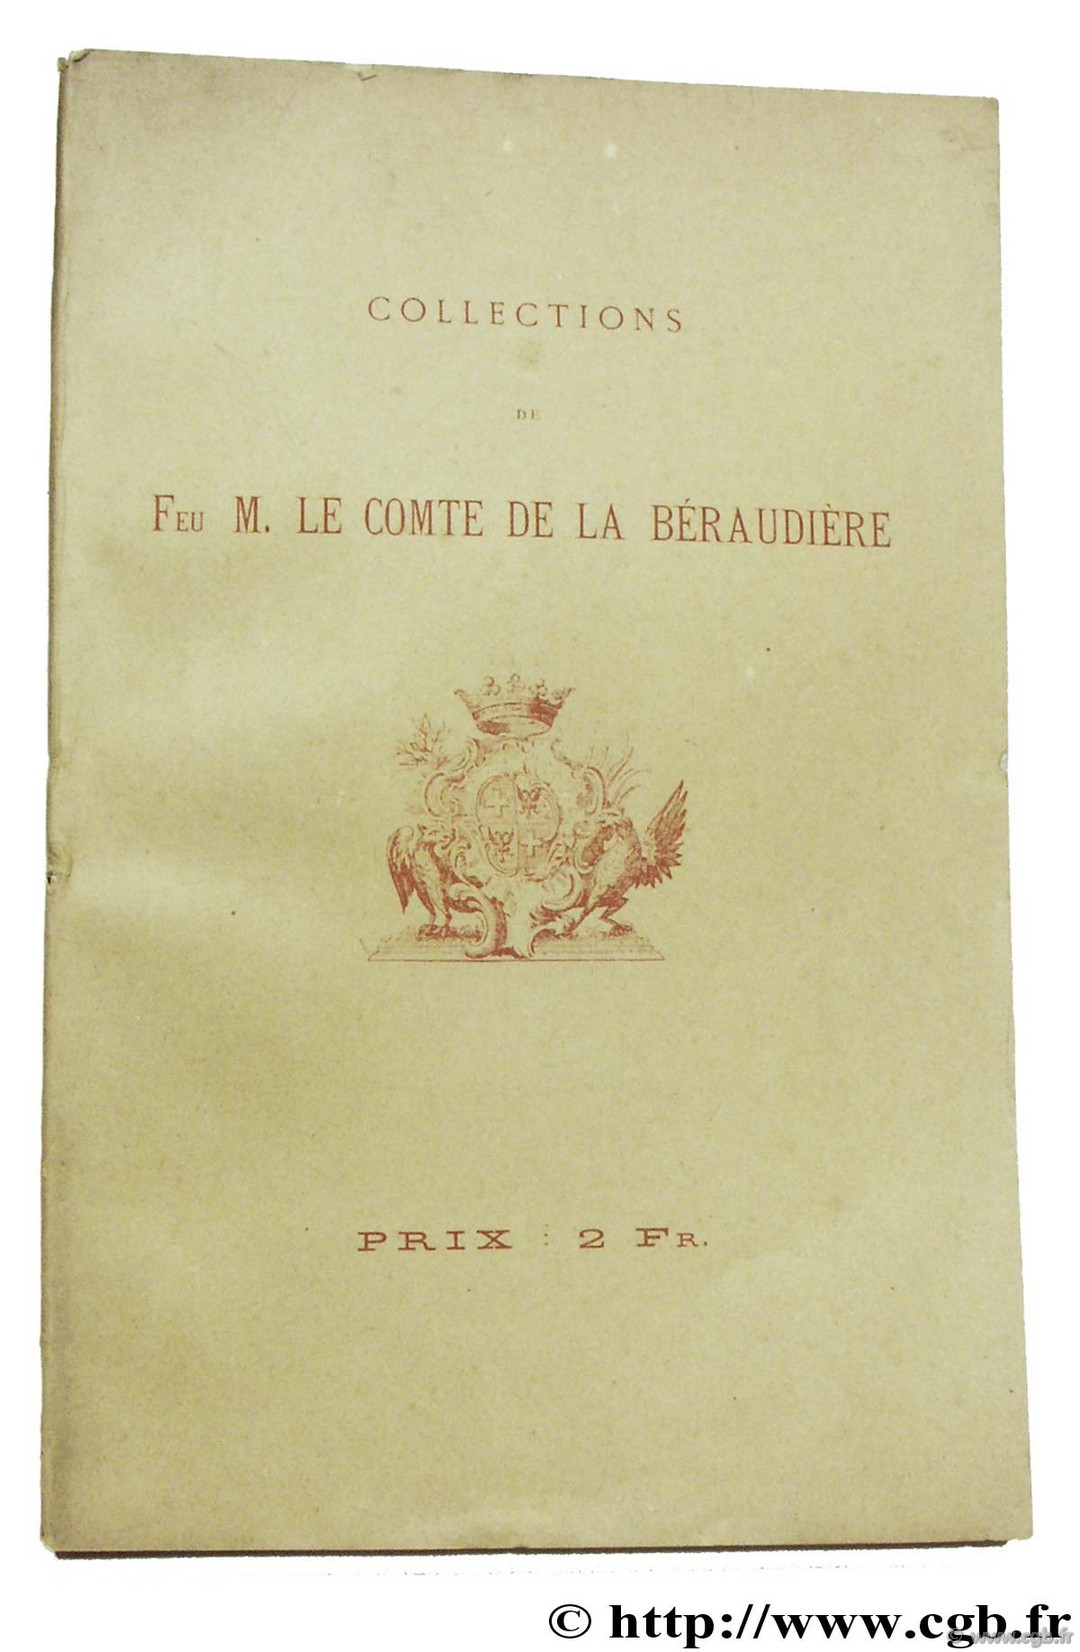 Collections de feu M. le Comte de la Béraudière 